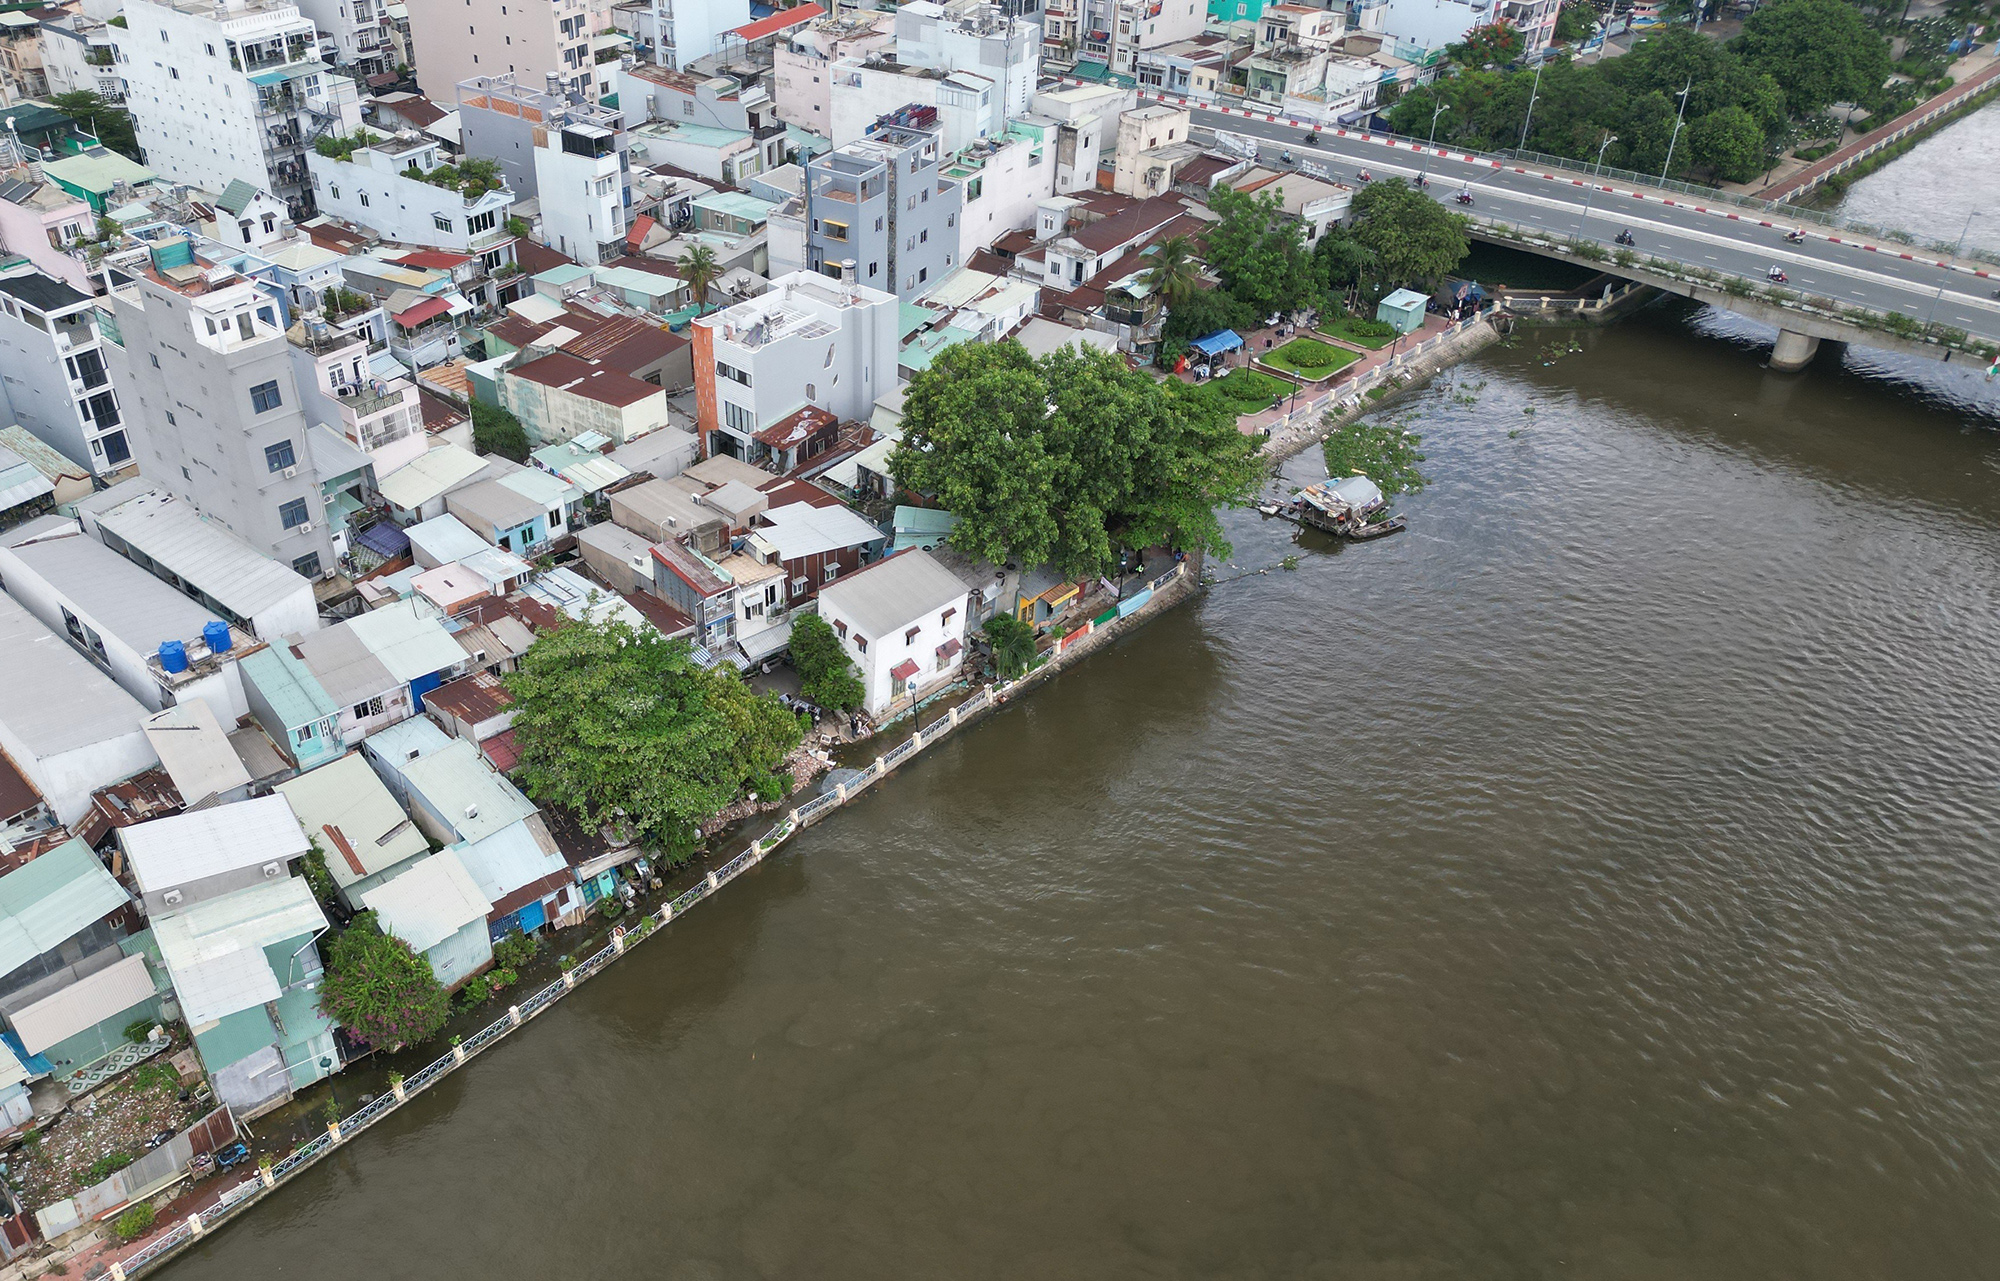 Hơn 1 tuần trước, một đoạn bờ phải kênh Thanh Đa (phường 25, quận Bình Thạnh), cách hạ lưu cầu Kinh khoảng 50m bị sạt lở khiến nhiều nhà bị sụt lún, hư hỏng gây nguy hiểm cho người dân.